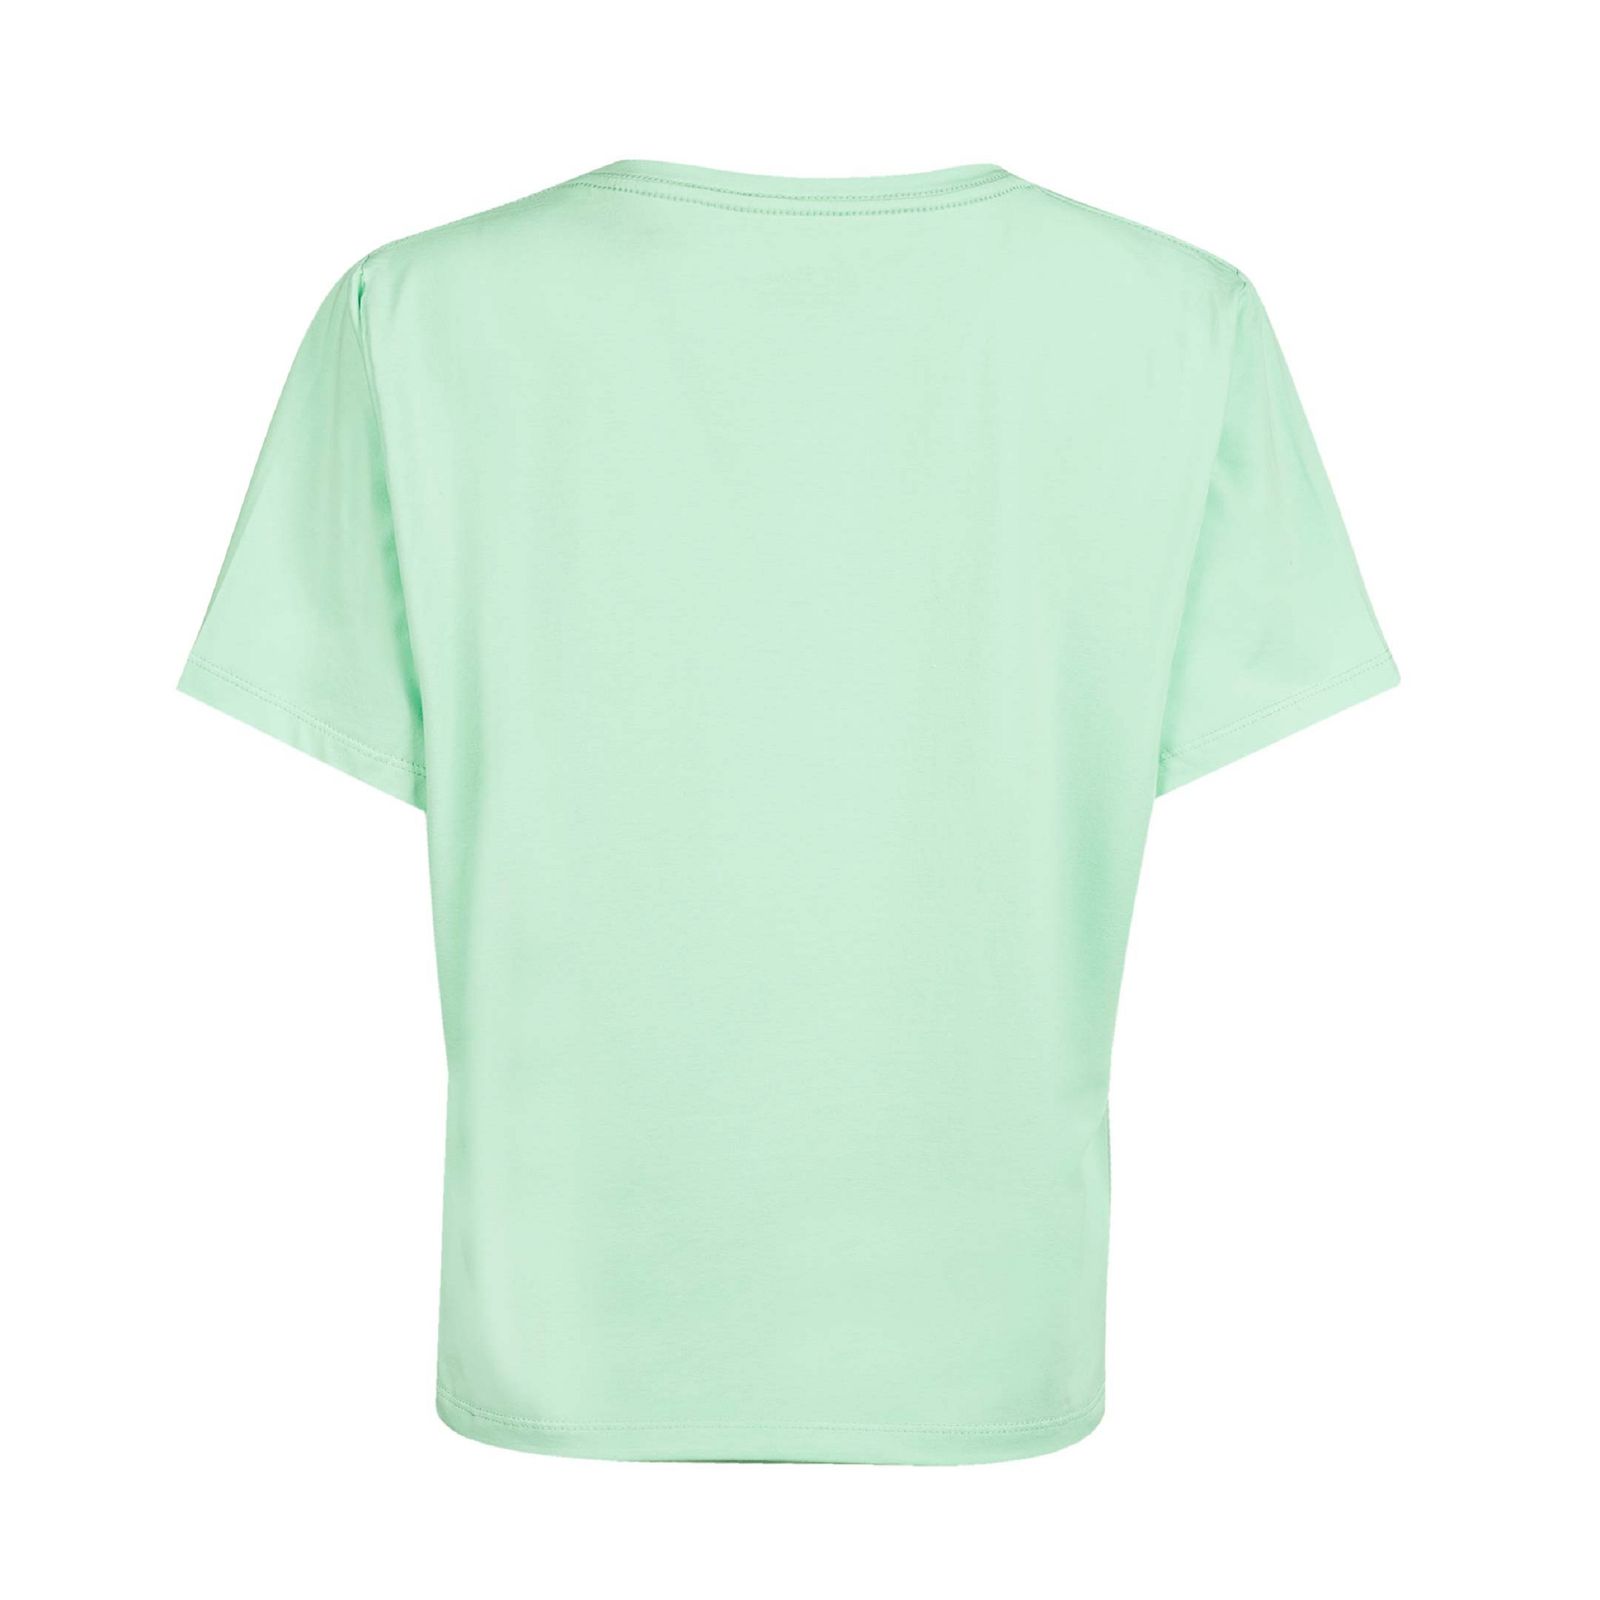 تی شرت آستین کوتاه زنانه جوتی جینز مدل یقه گرد کد 1551257 رنگ سبز روشن -  - 2